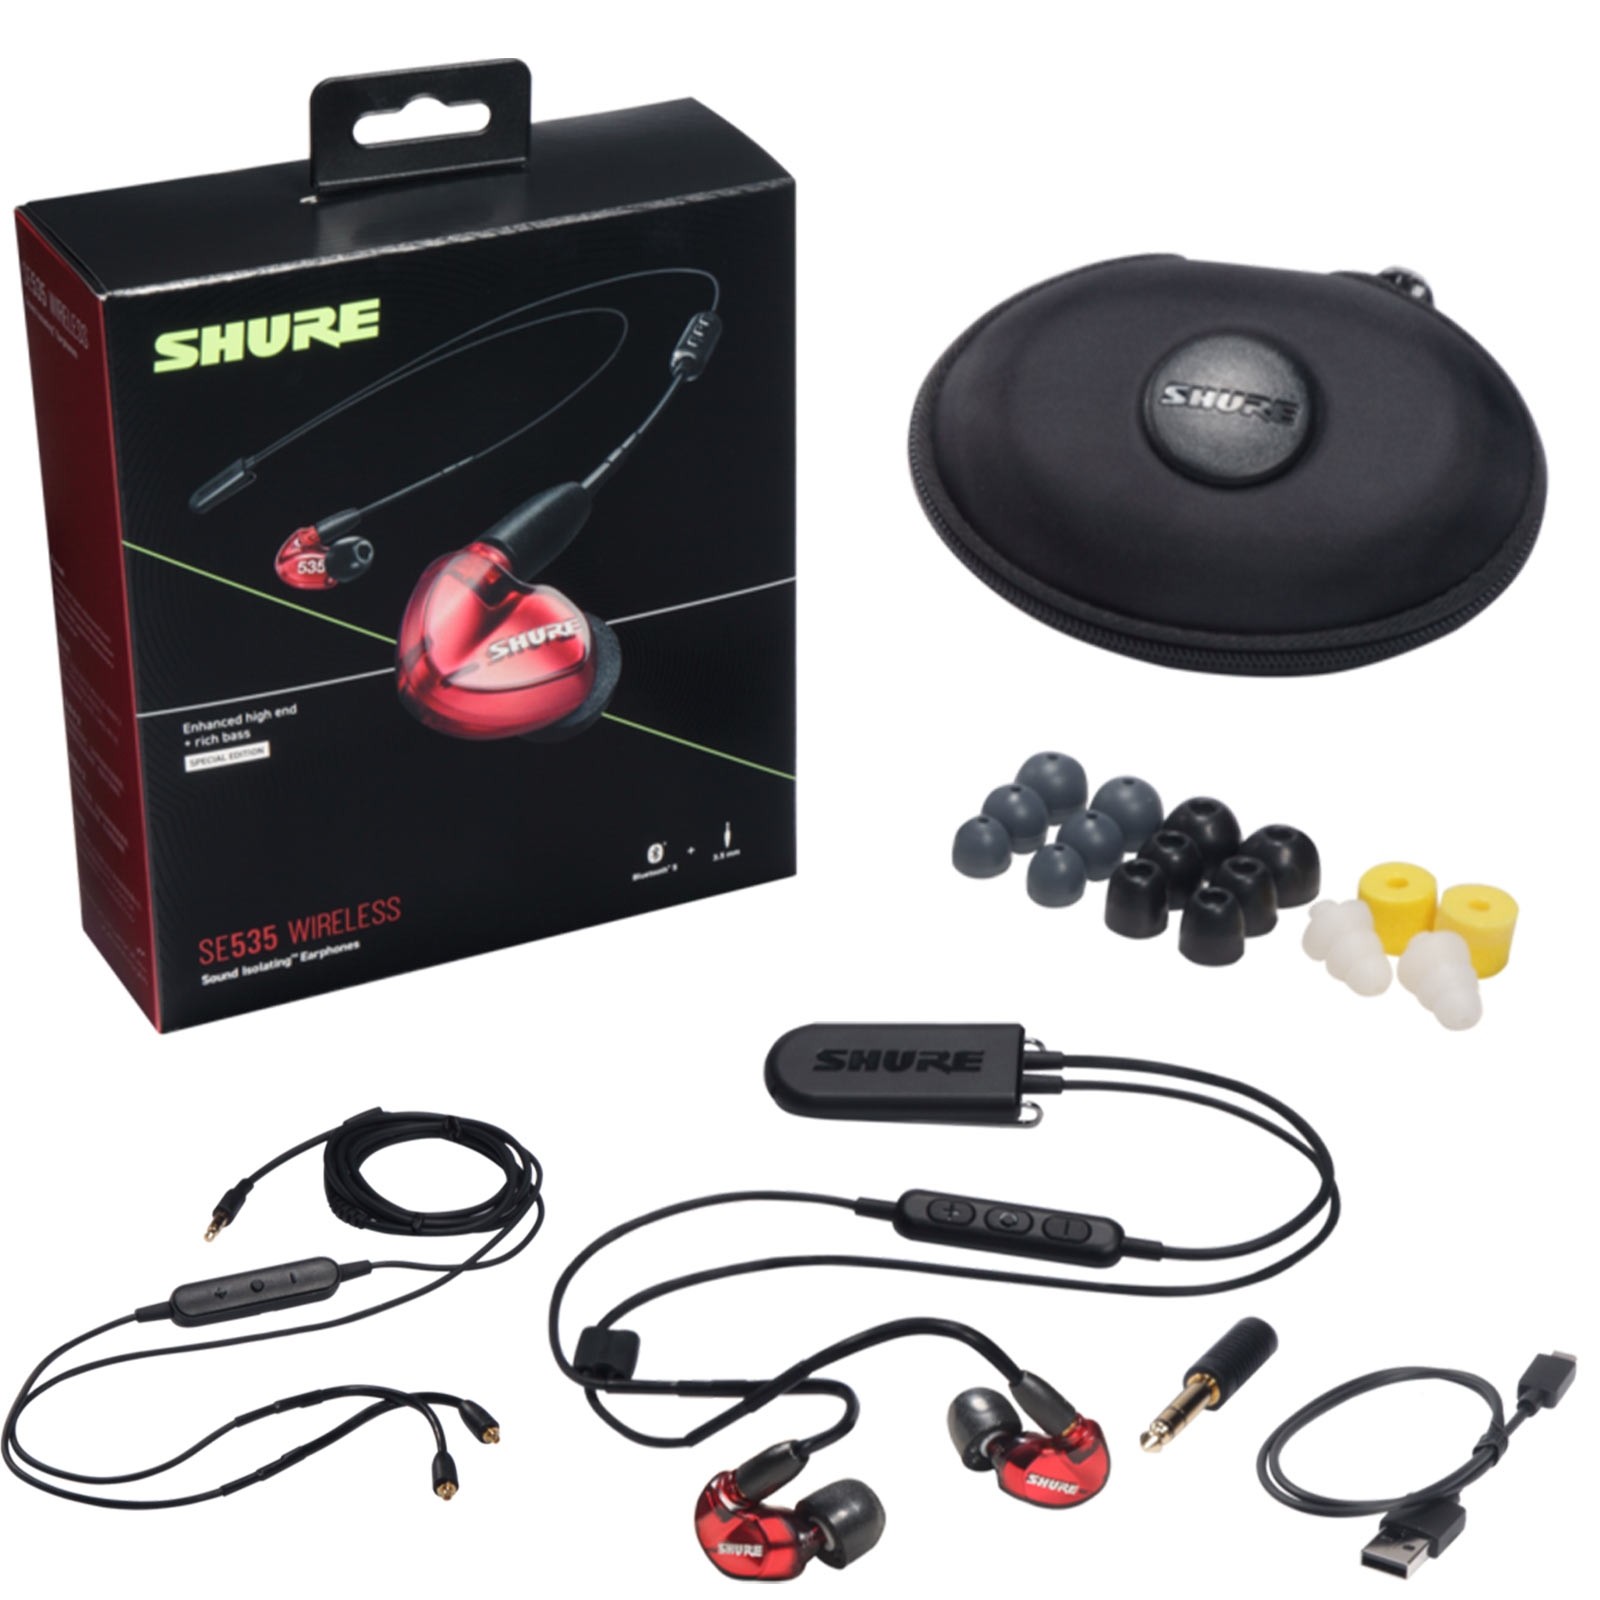 Shure SE535 Wireless